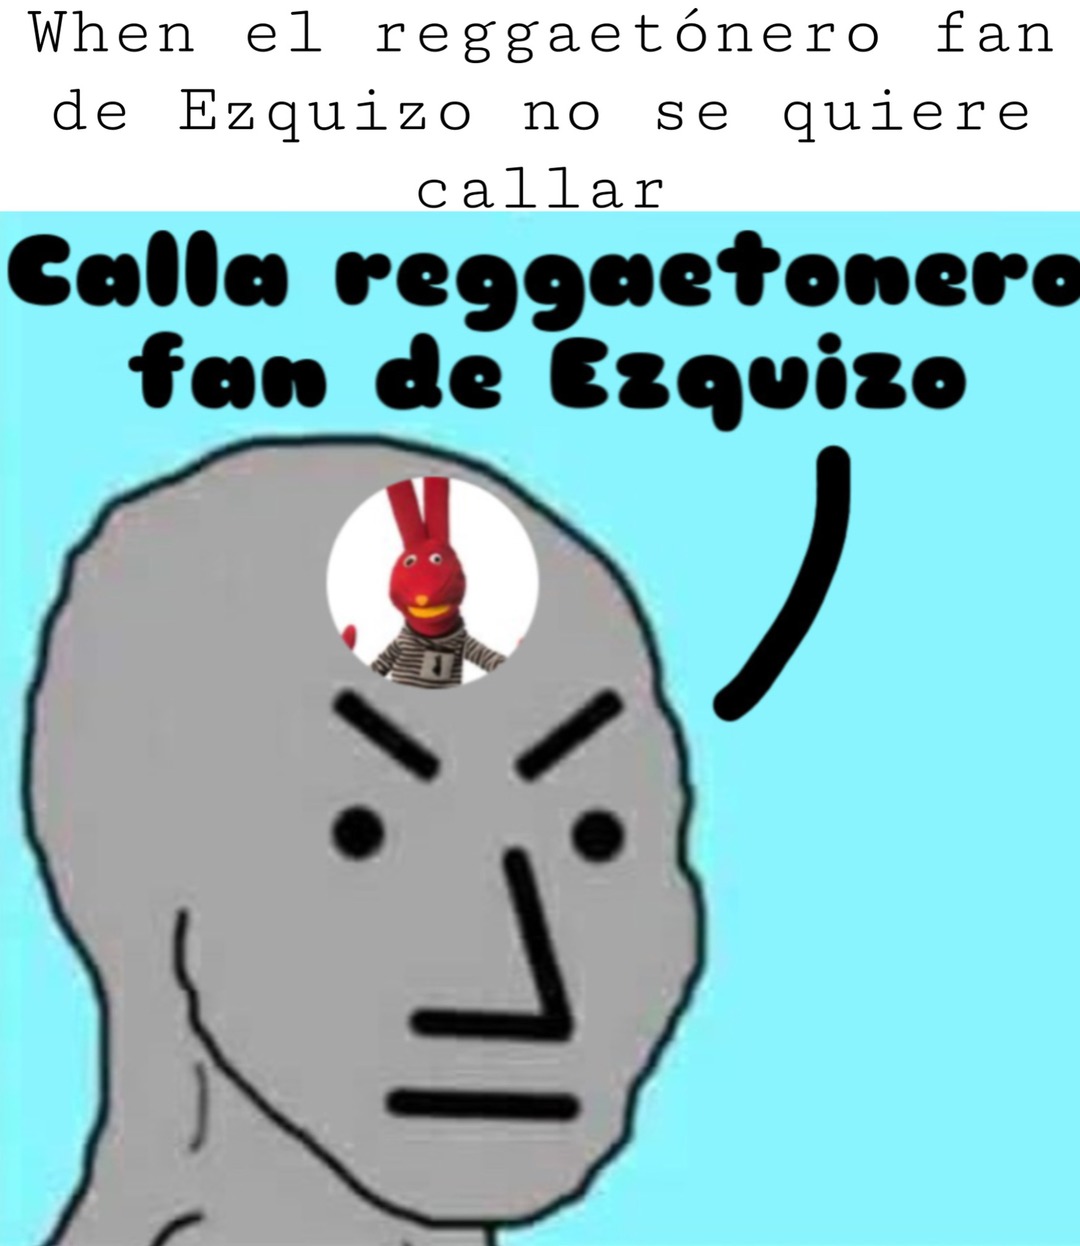 When el reggaetónero fan de ezquizo no se quiere callar - meme